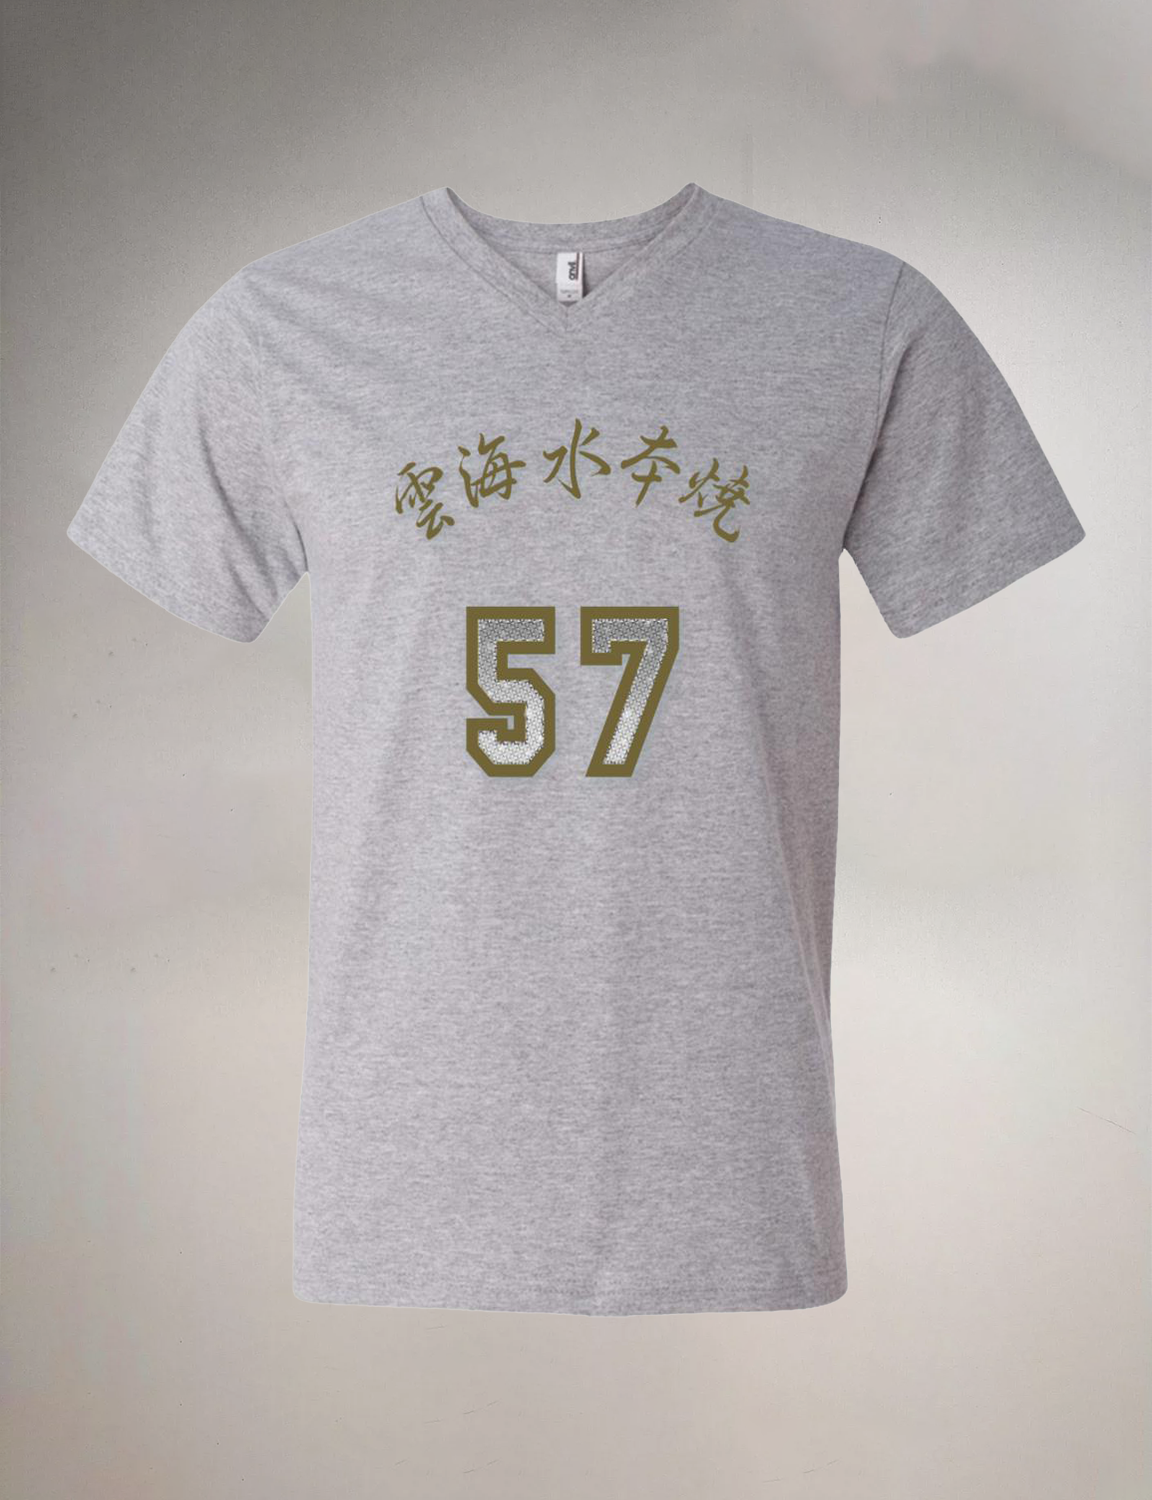 Honyaki Blade Printed V-Neck T-Shirt　水本焼包丁VネックT